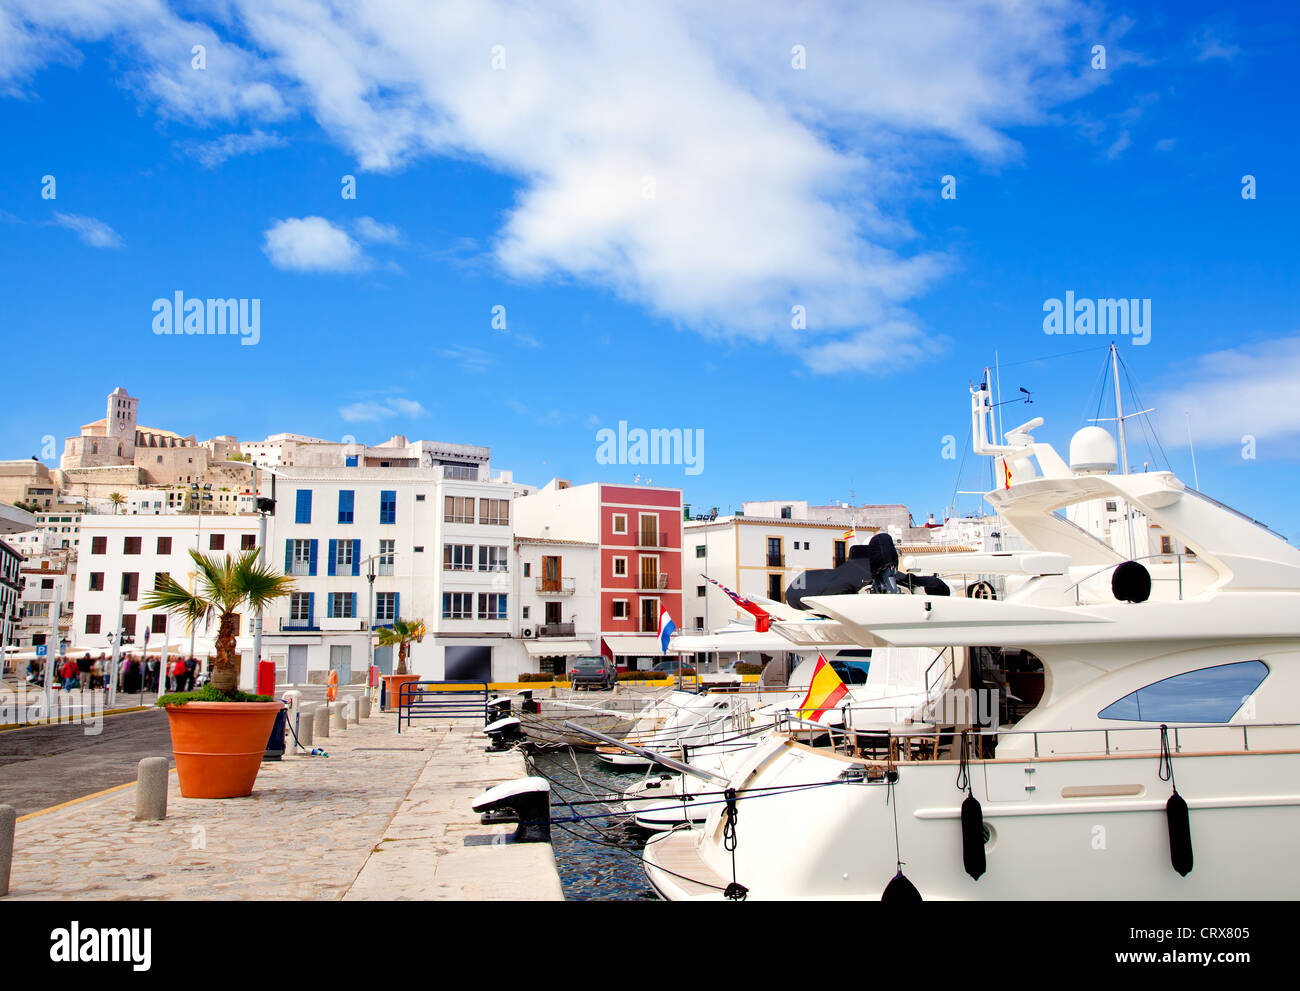 Eivissa, Ibiza town avec église, sous le ciel bleu d'été Banque D'Images